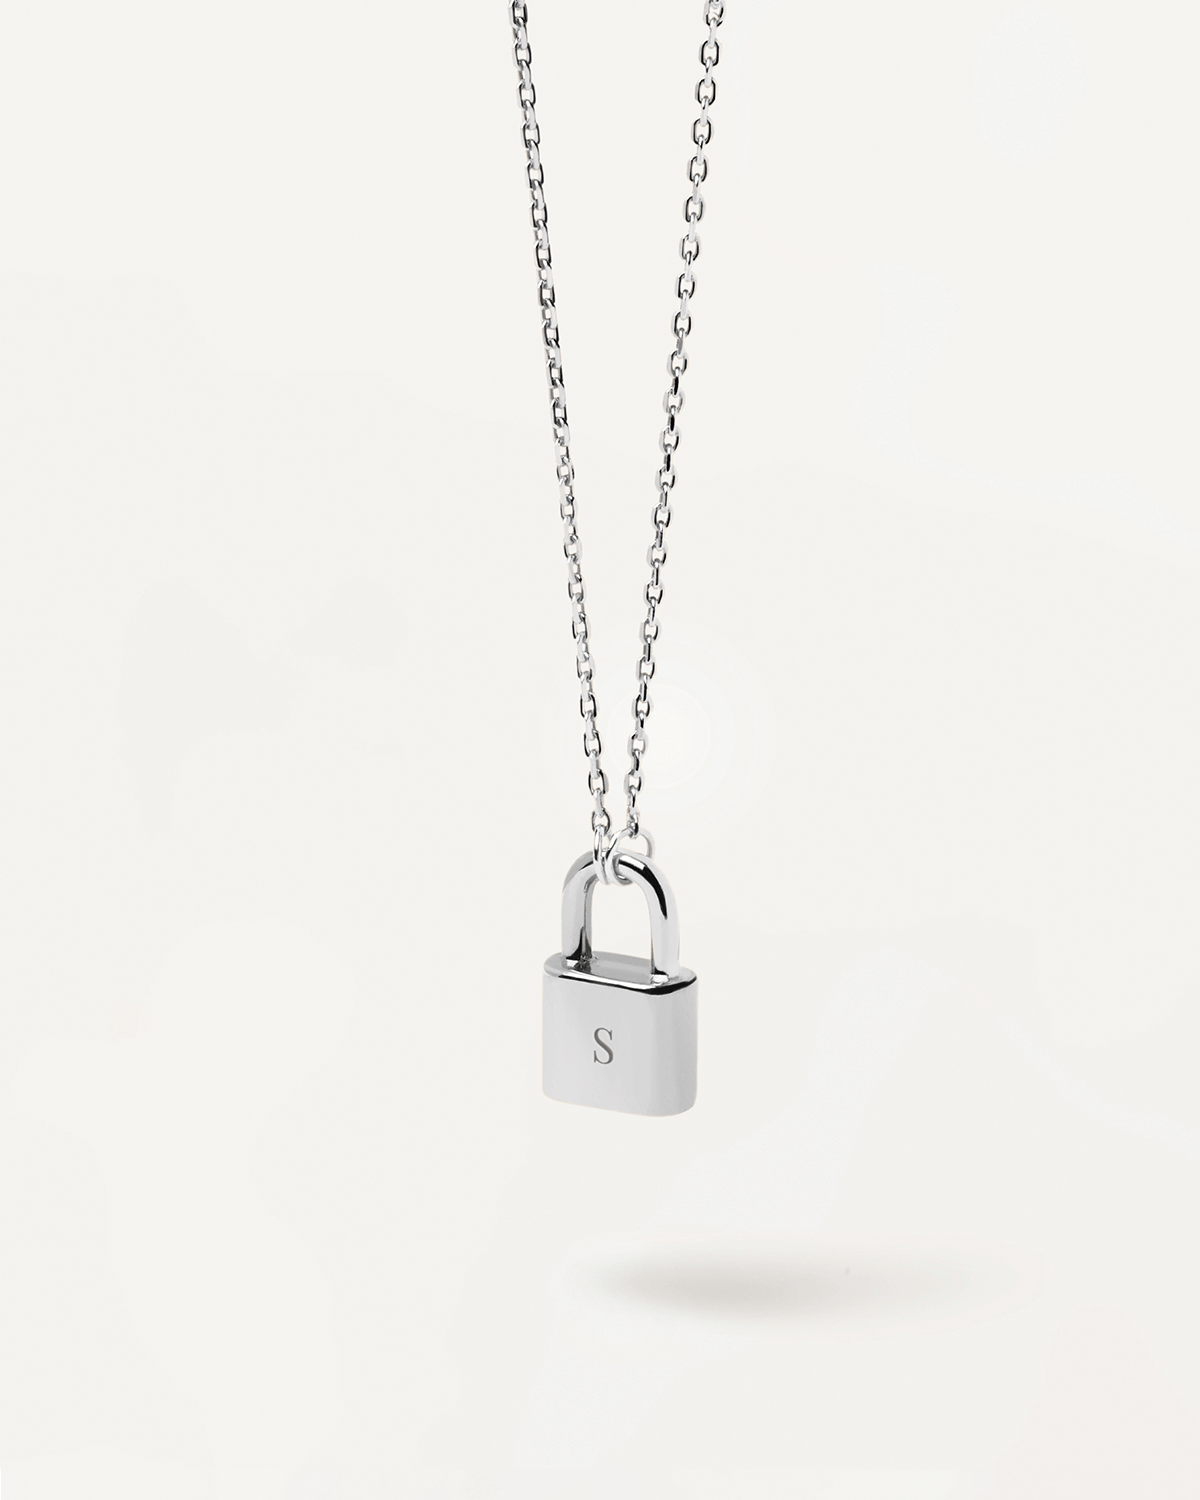 silver lock necklace